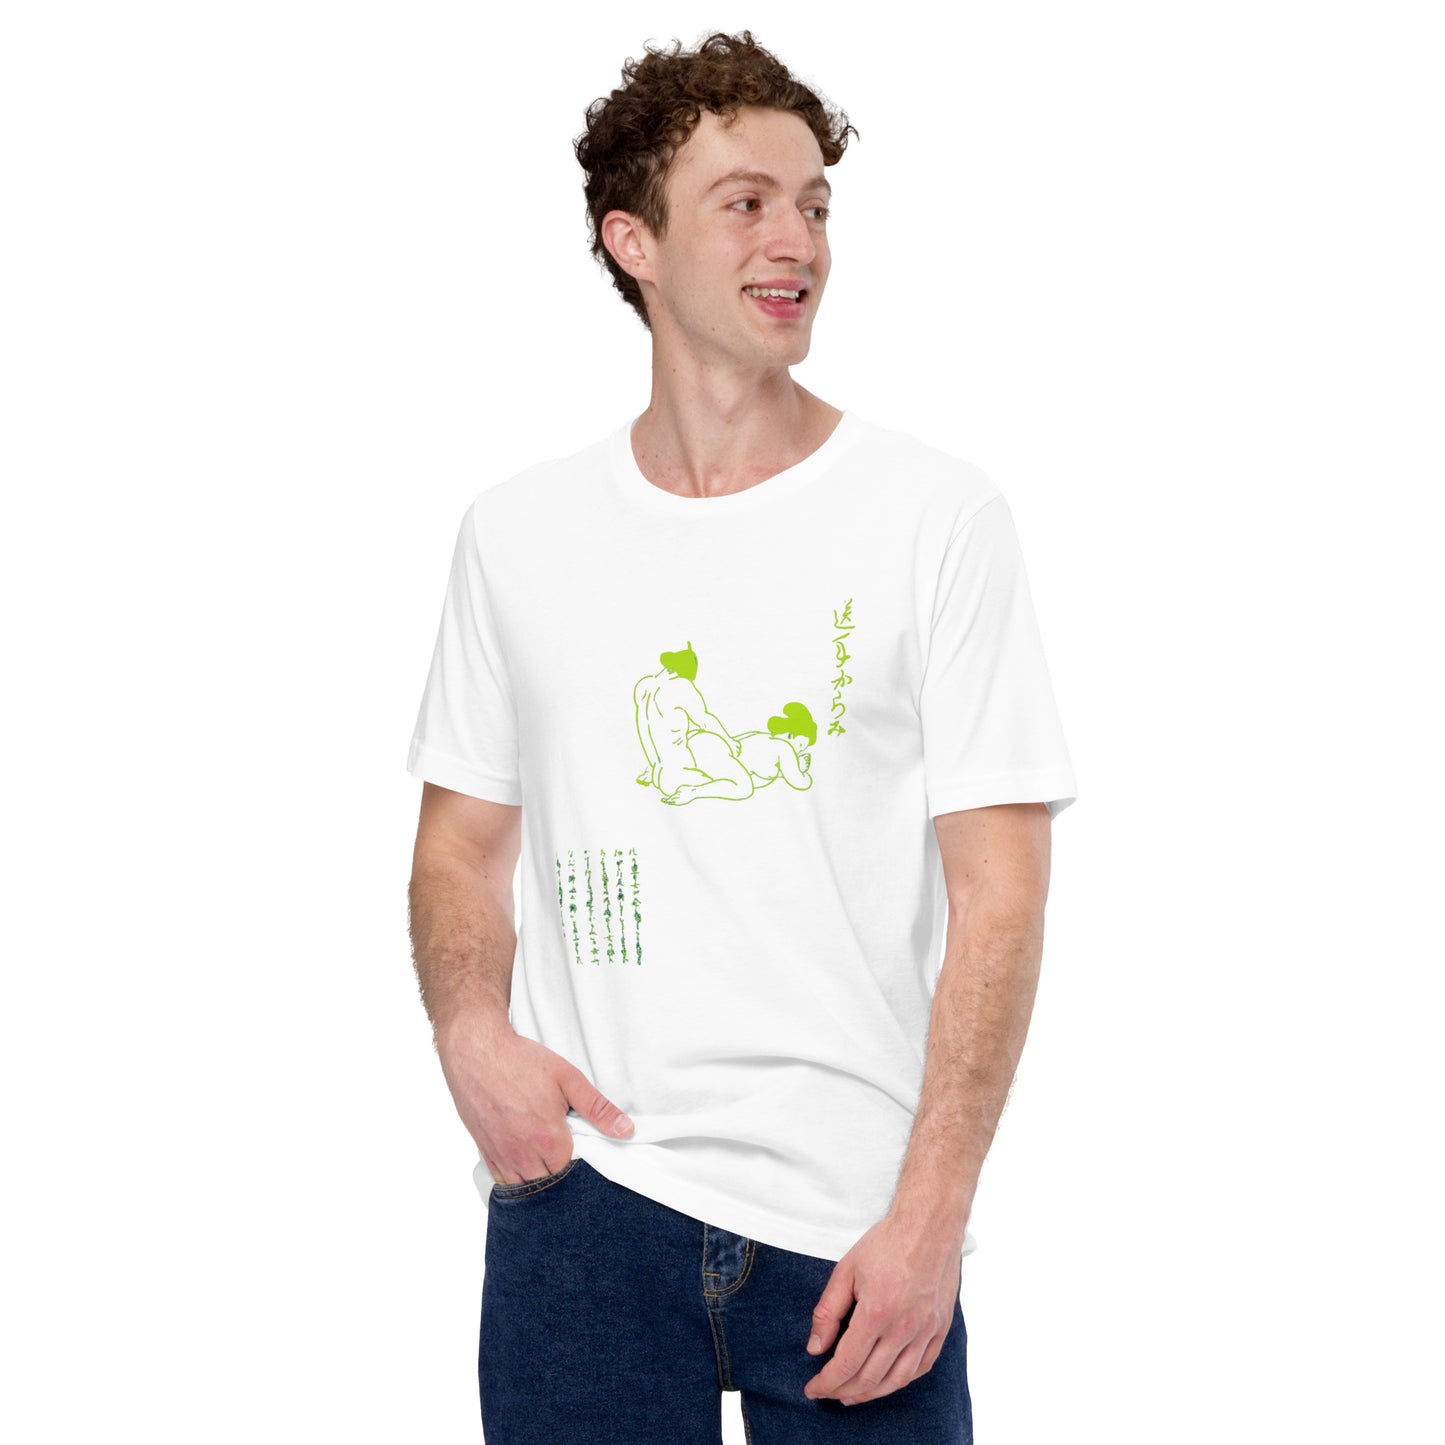 Unisex t-shirt "31 SAKATE KARAMI" White